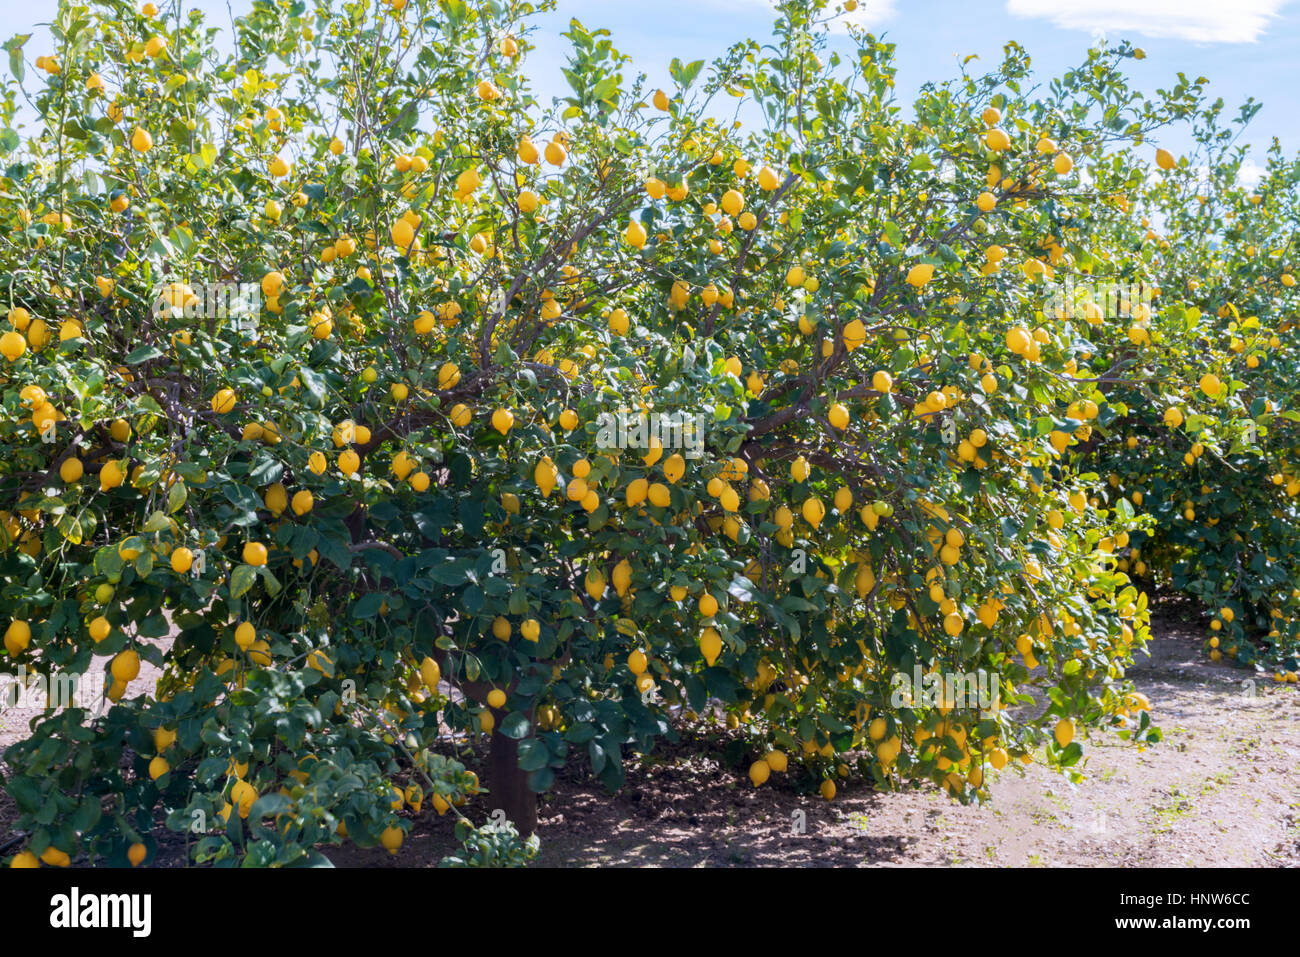 Zitronenbäume voller Früchte in einem spanischen Obstgarten. aufgenommen Sie an einem sonnigen Tag mit blauem Himmel im Hintergrund Stockfoto